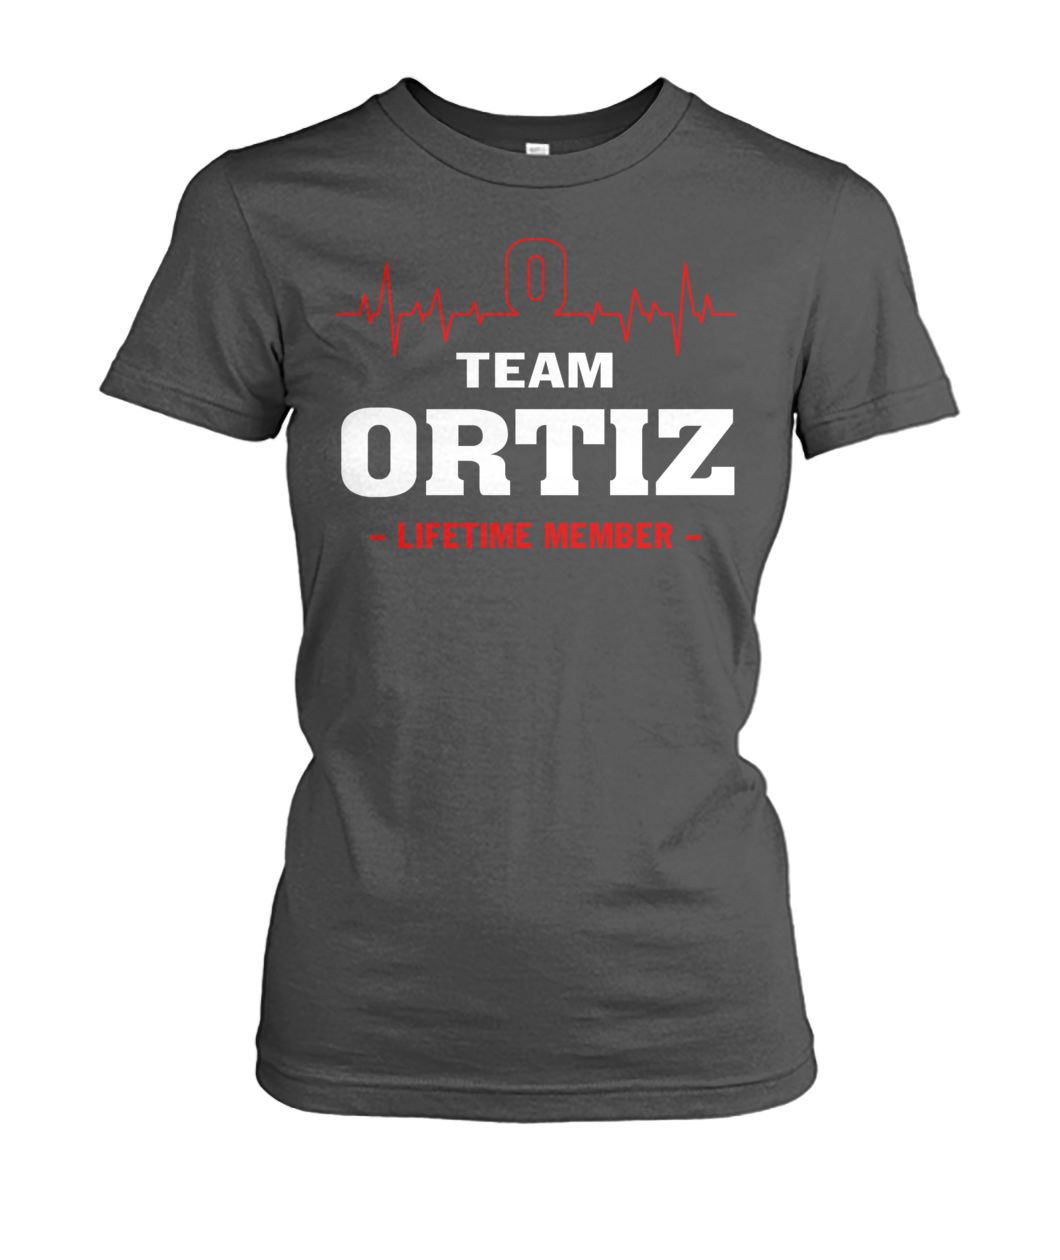 Team ortiz lifetime member women's crew tee